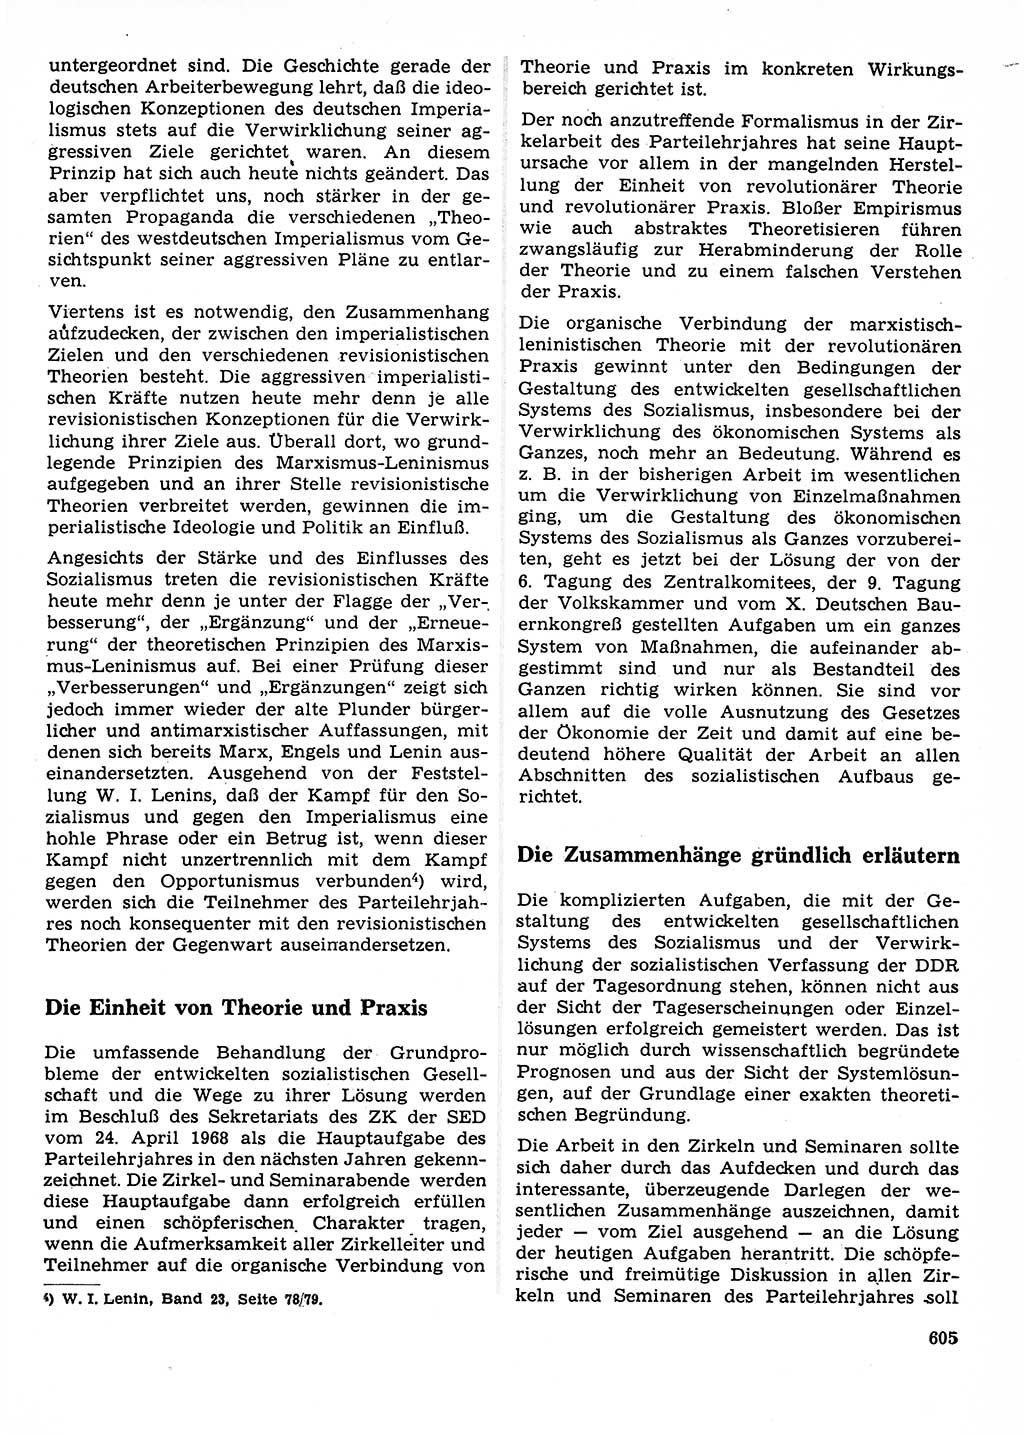 Neuer Weg (NW), Organ des Zentralkomitees (ZK) der SED (Sozialistische Einheitspartei Deutschlands) für Fragen des Parteilebens, 23. Jahrgang [Deutsche Demokratische Republik (DDR)] 1968, Seite 605 (NW ZK SED DDR 1968, S. 605)